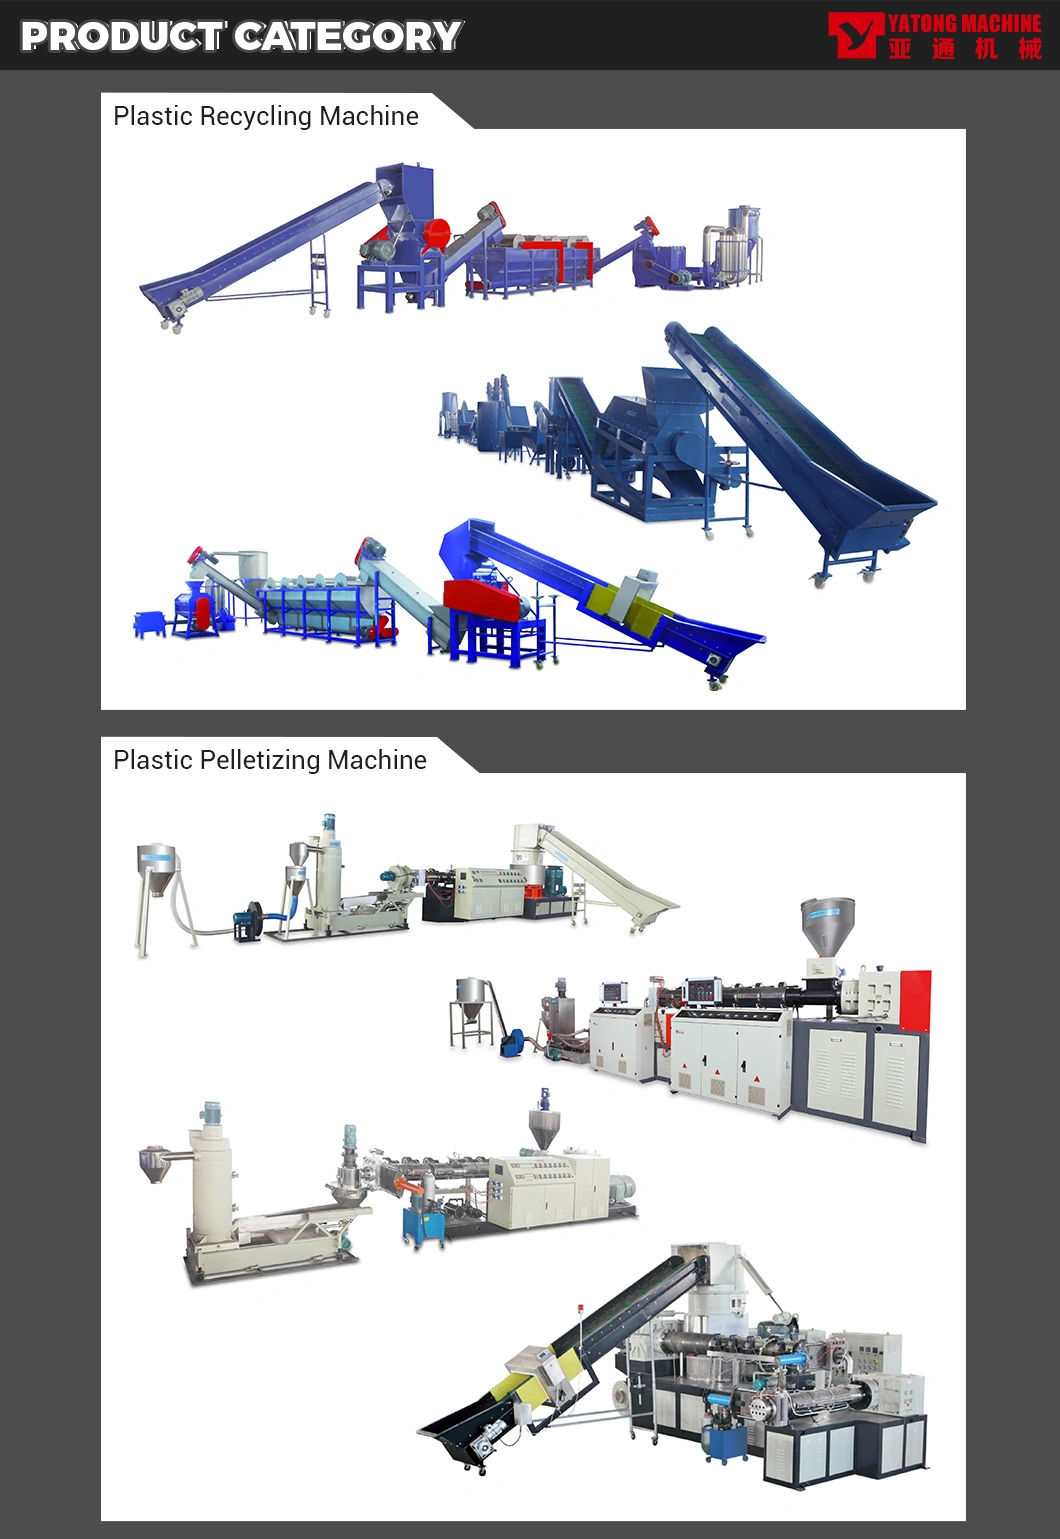 Yatong Waste Plastic Recycling Machine Plastic Pelletizing Line / Plastic Recycling Machine / Granulating Machine